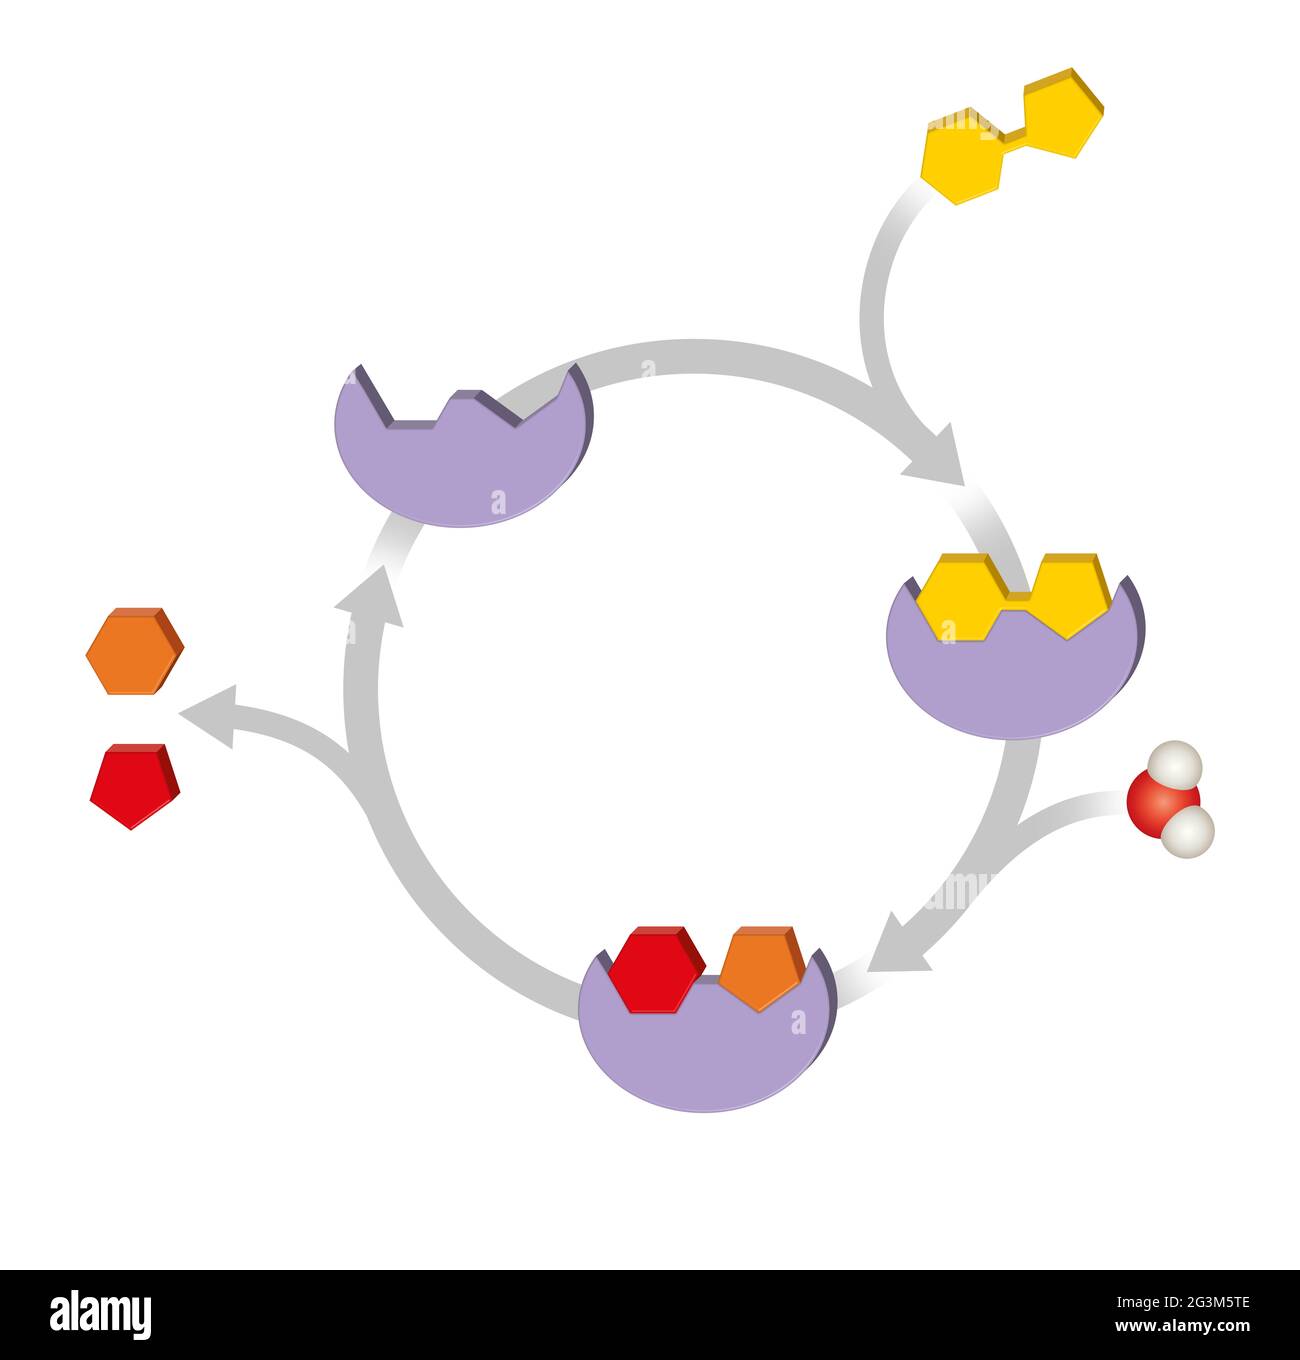 Funzione enzimatica. Catalizzatori biologici macromolecolari Foto Stock